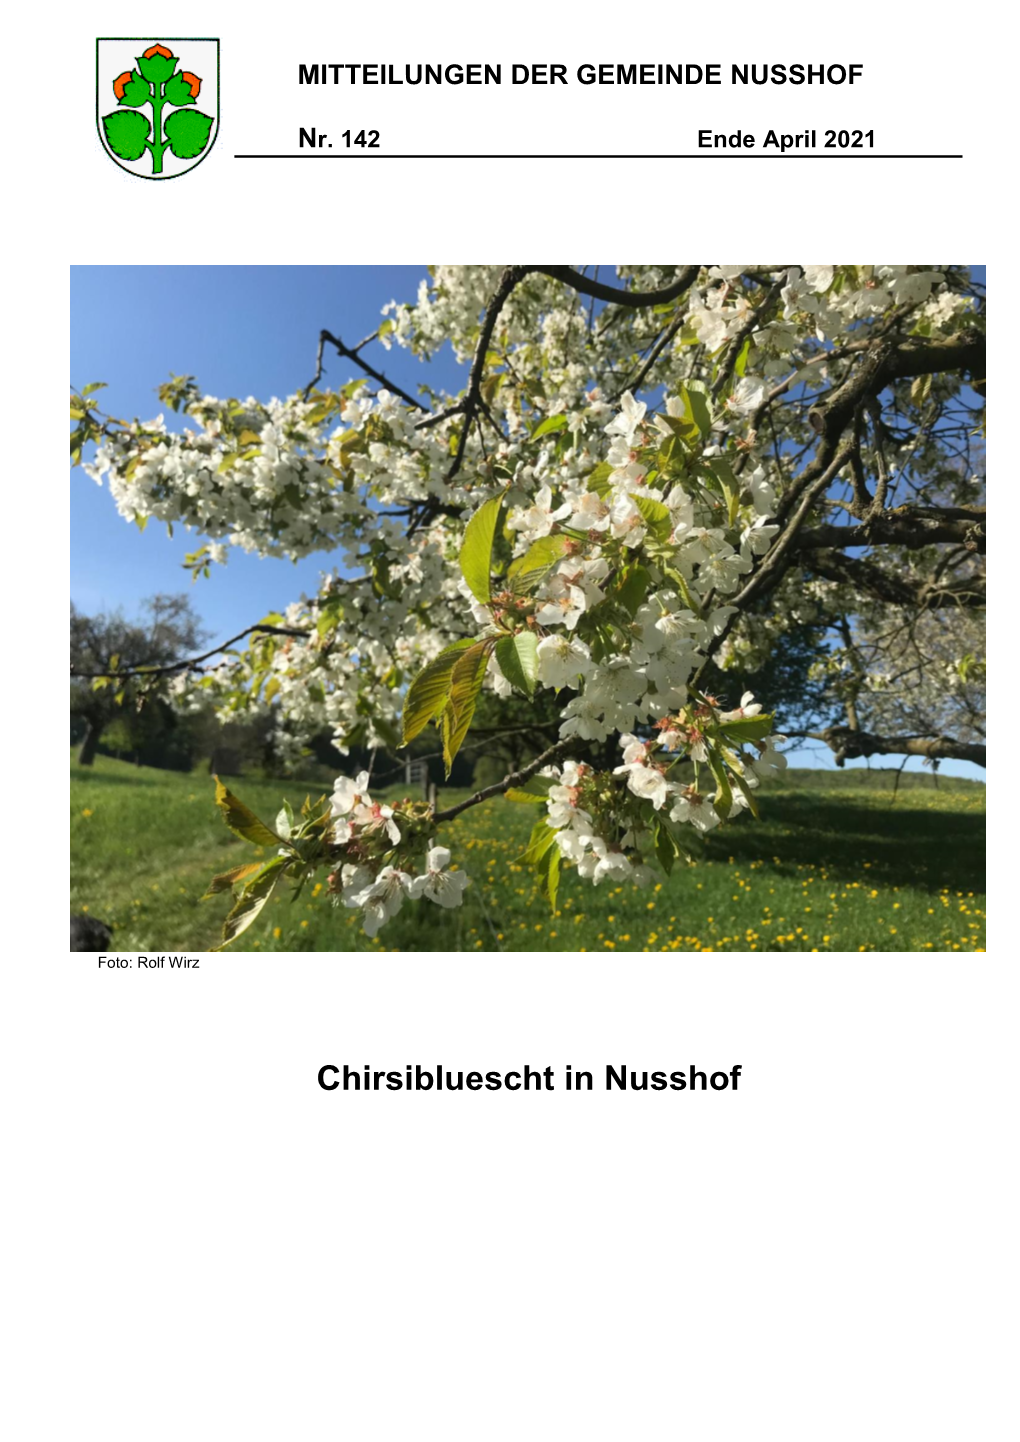 Chirsibluescht in Nusshof